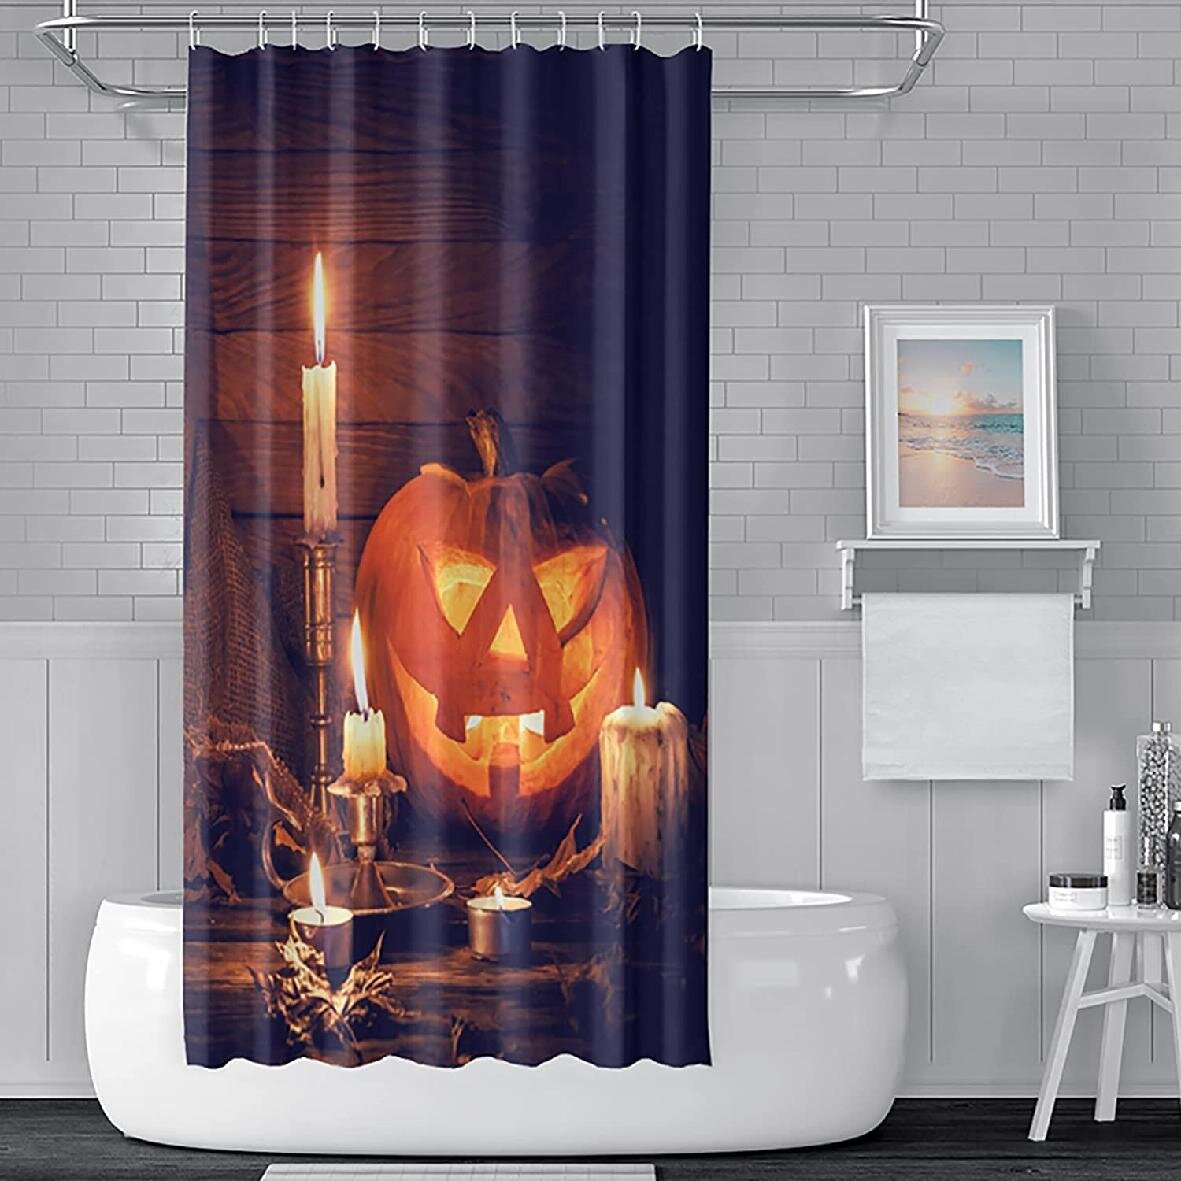 Fabric Shower Curtain Pumpkin Waterproof Polyester Halloween Decor Accessories 